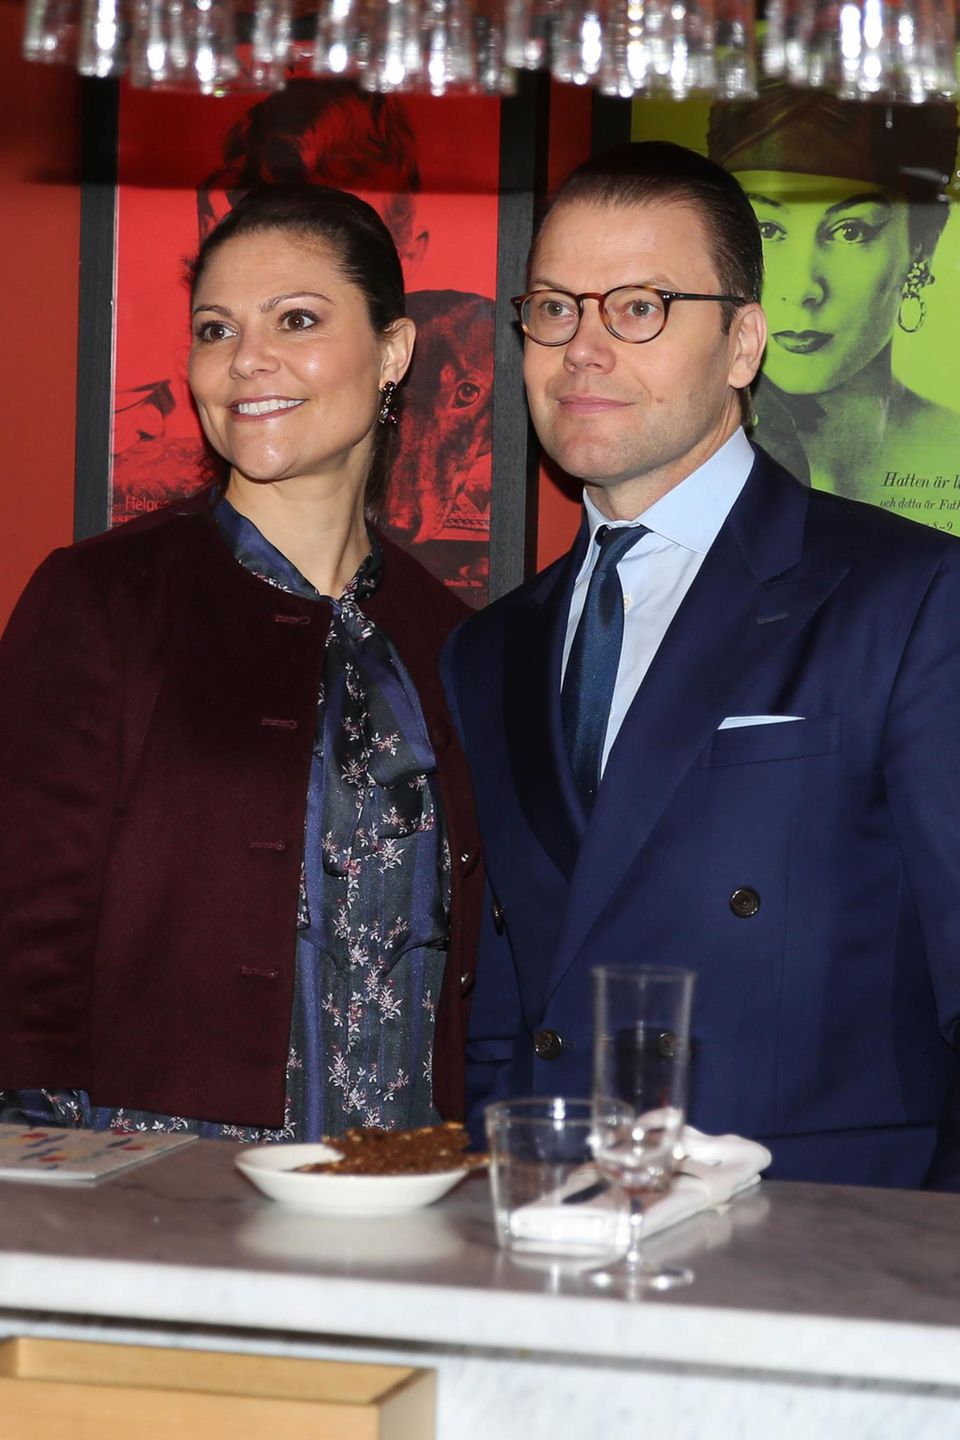 Am letzten Abend besuchen Prinzessin Victoria und Prinz Daniel zusammen die schwedische Brasserie "Björk" in Mailand.